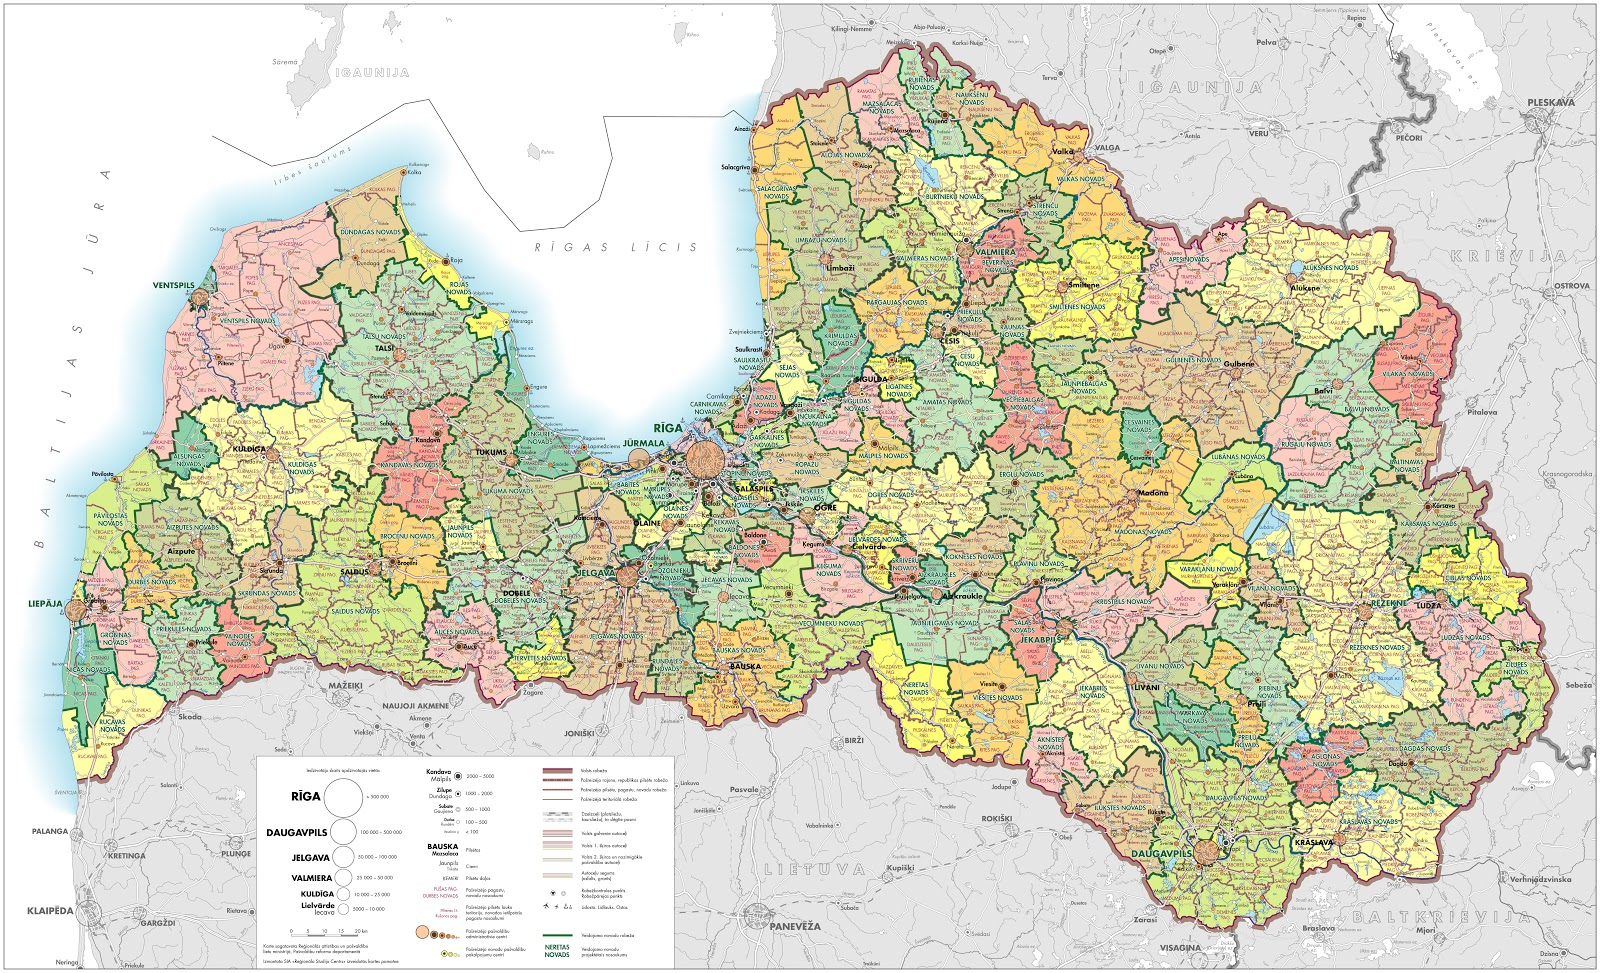 Kort Over Letland Letland   Geografiske Kort over Letland   Dansk Encyklopædi Kort Over Letland